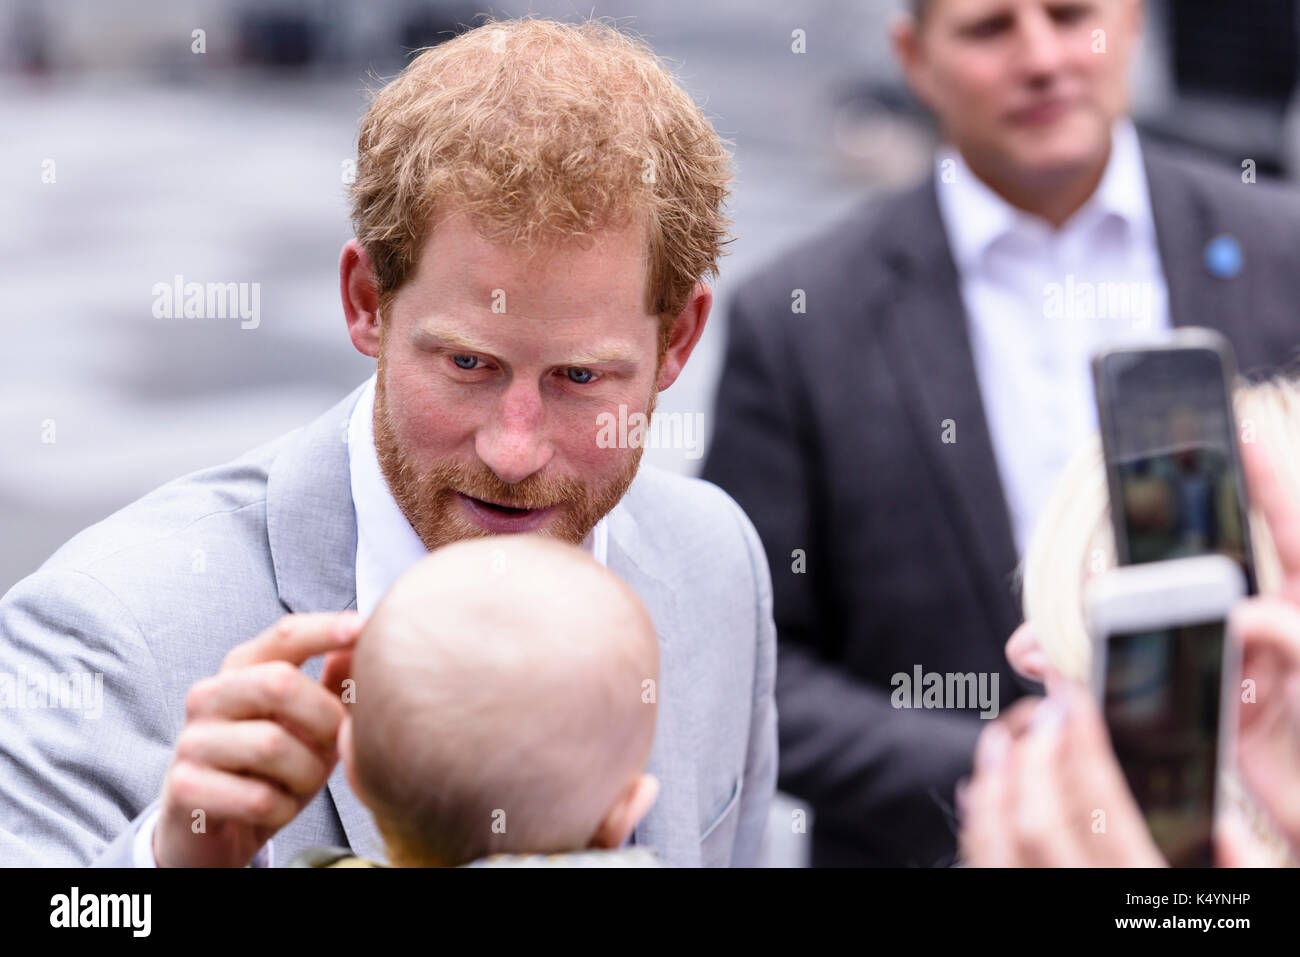 Belfast, Irlanda del Nord. 07/09/2017 - il principe Harry si ferma ad ammirare un bambino durante un aborigeno a Belfast il suo primo Irlanda del Nord visitate. Foto Stock